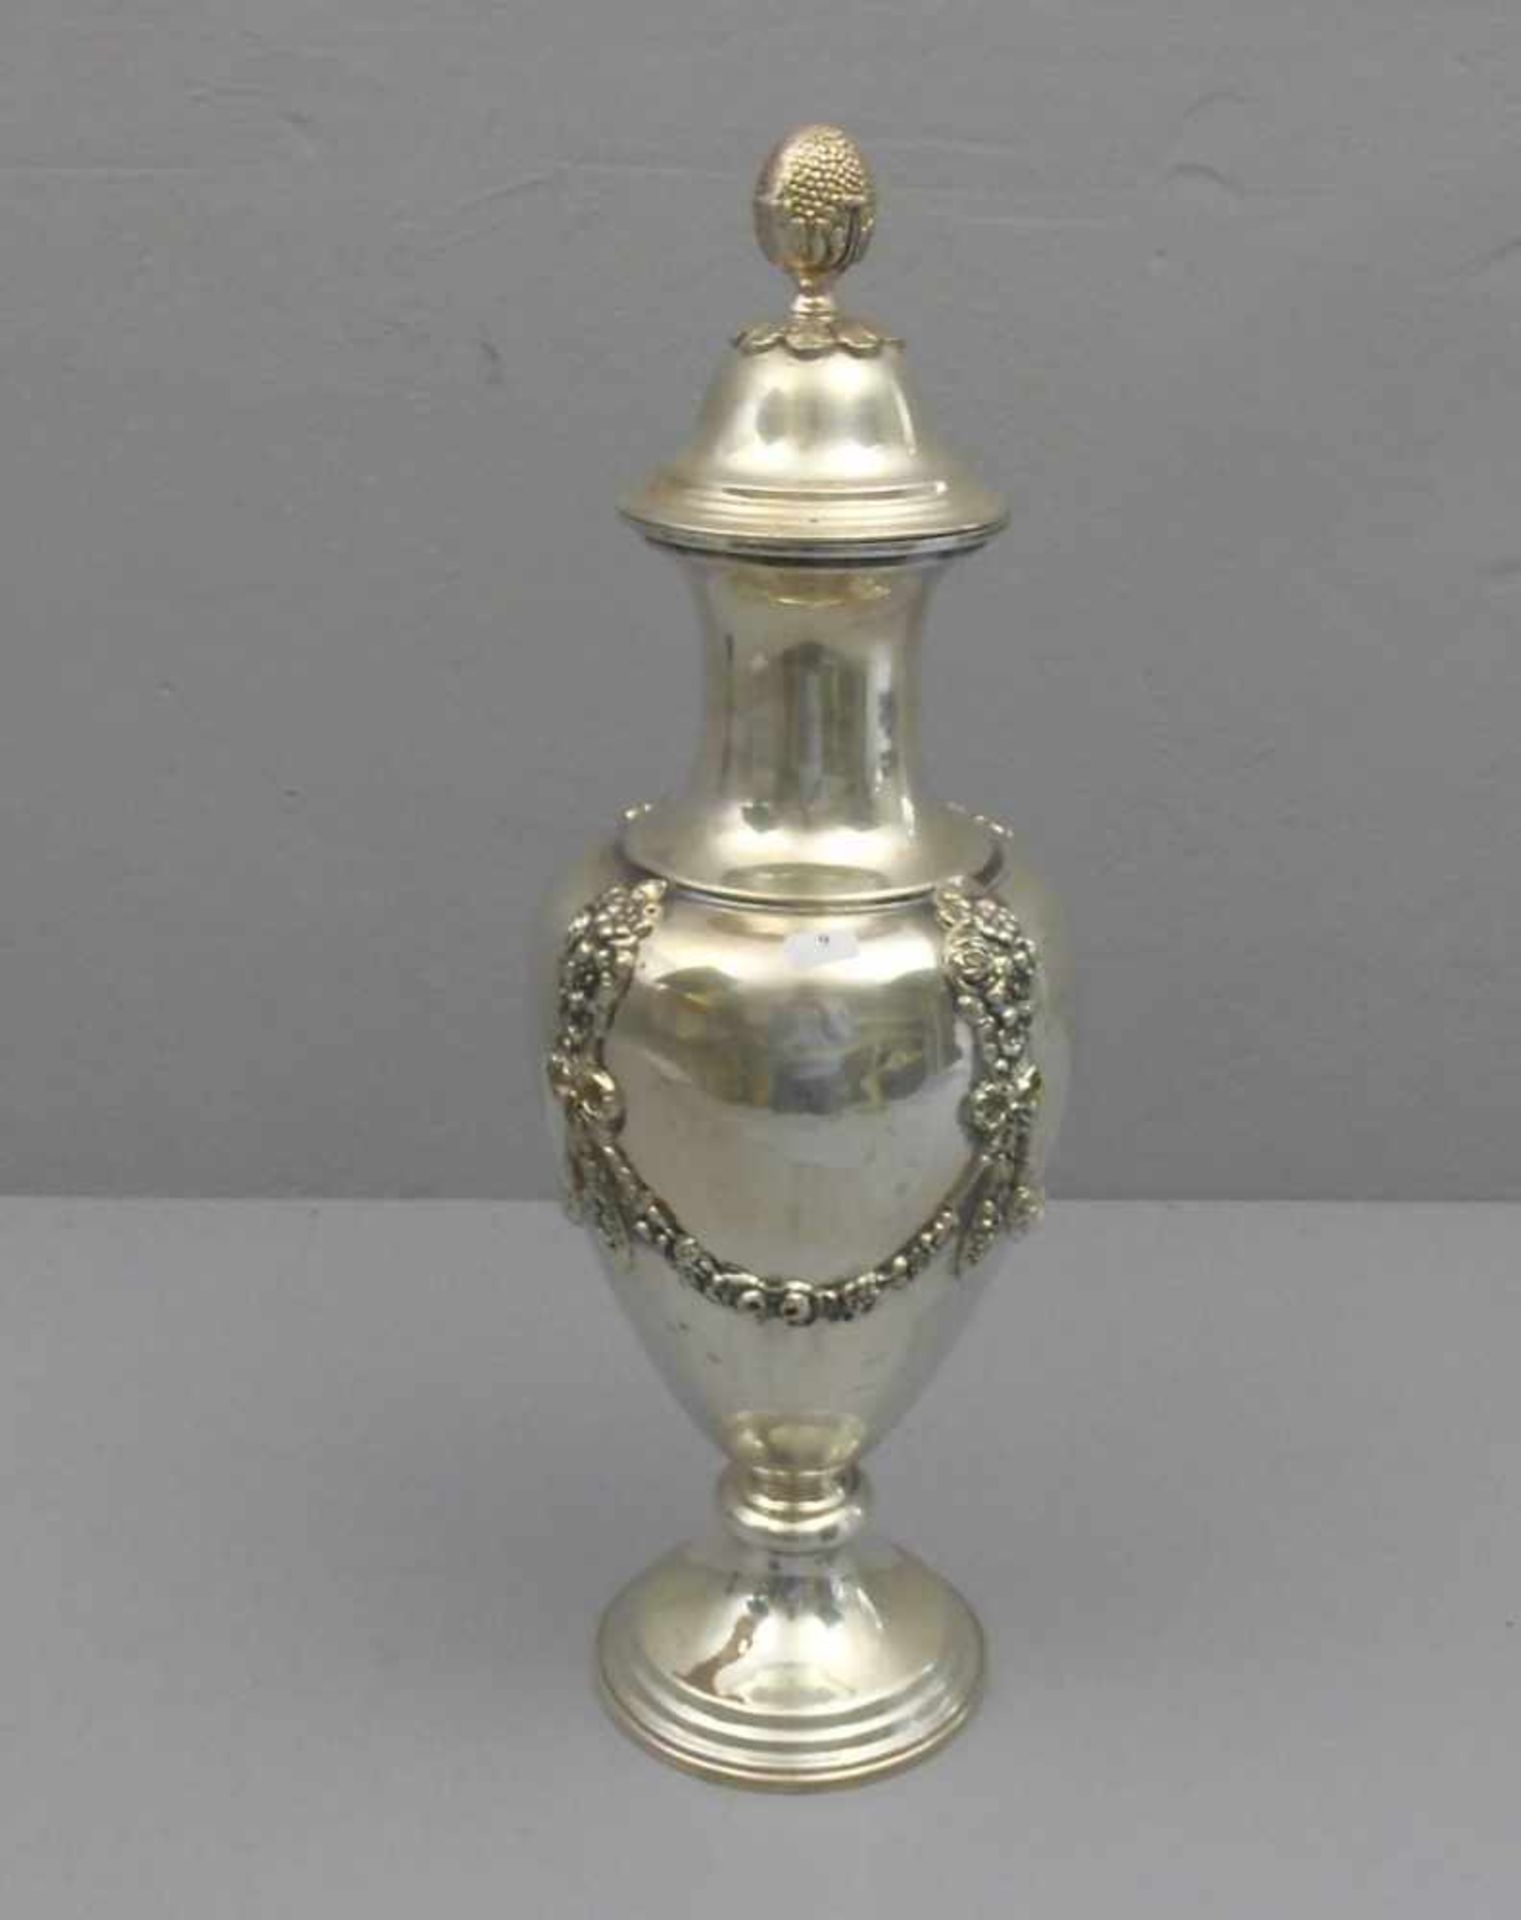 GROSSE DECKEVASE, 900er Silber (insgesamt 1271 g), gepunzt mit Feingehaltsangabe und verschlagener